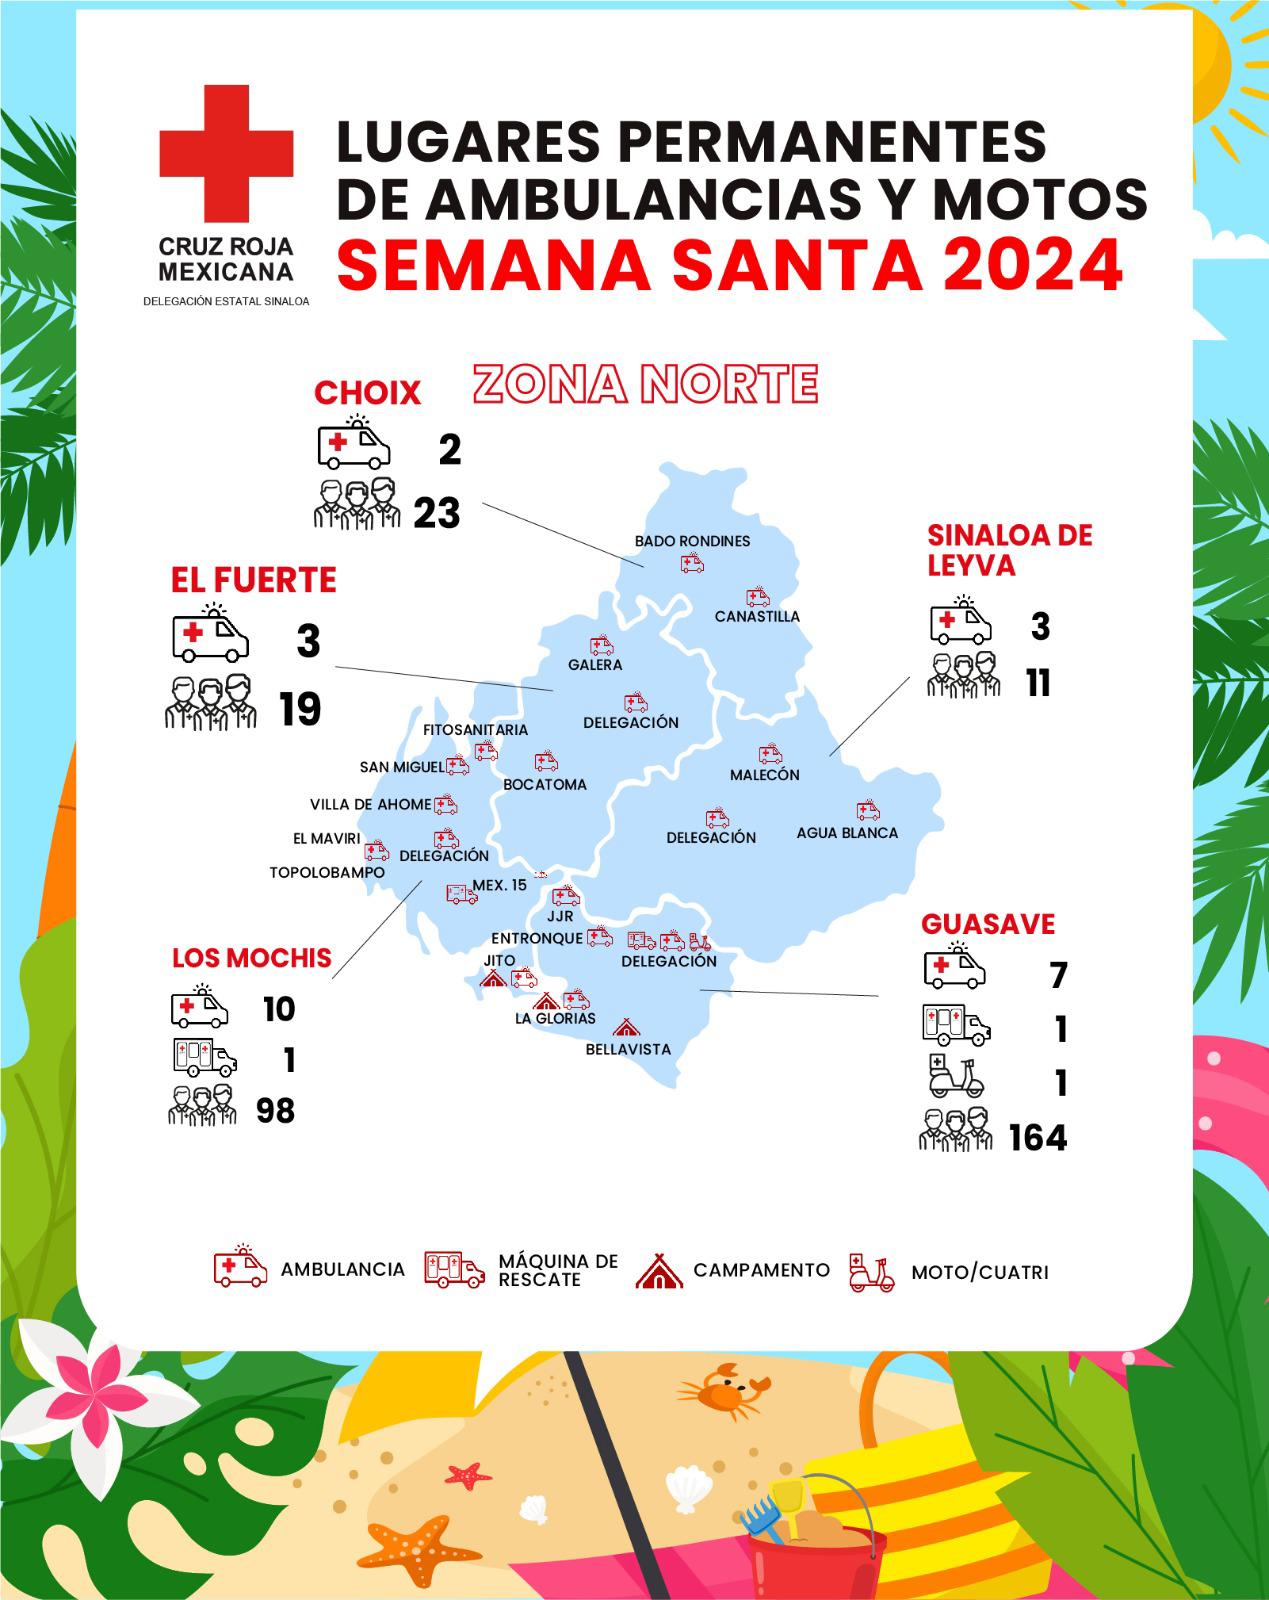 $!Mantendrá Cruz Roja operativo en 130 puntos de mayor afluencia de Sinaloa durante Semana Santa